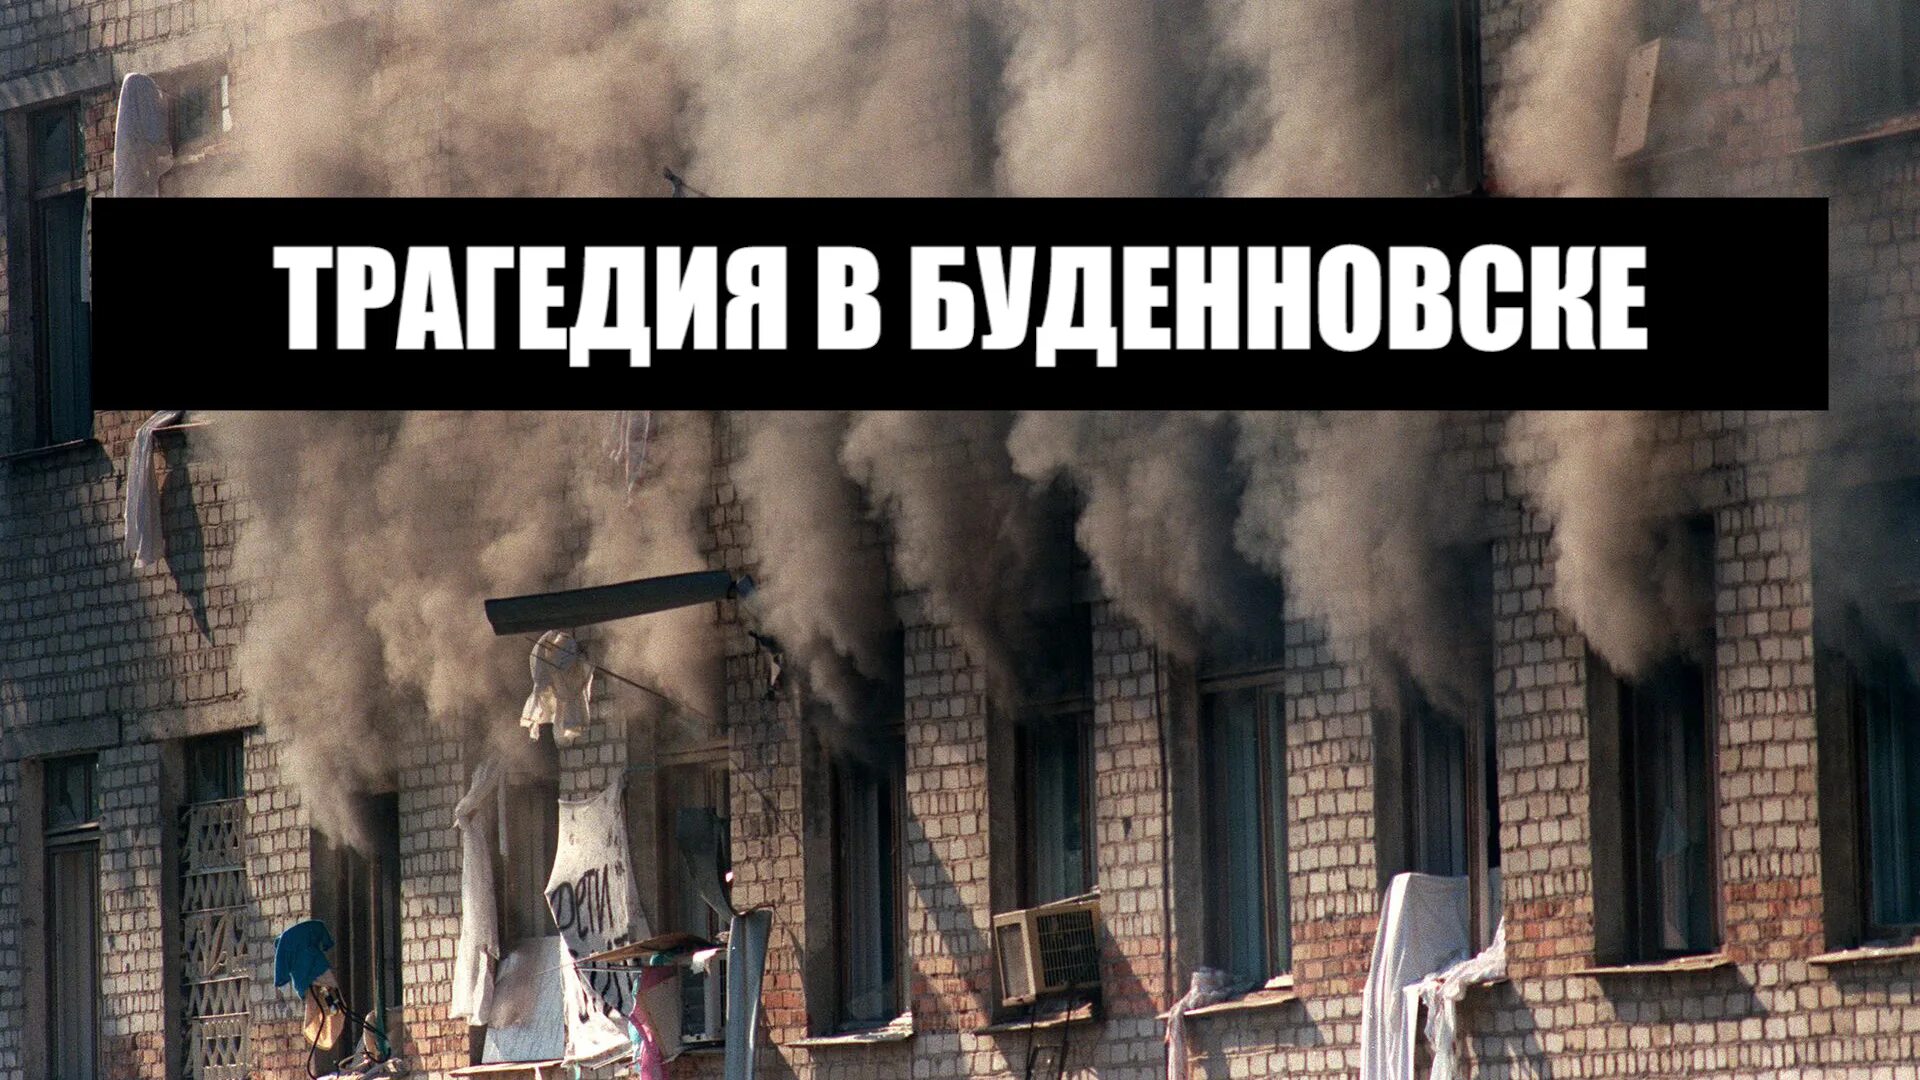 14 Июня 1995 года – Буденновск, захват больницы. Терроризм Буденновск 1995. Буденновск 14 июня 1995 года. Штурм больницы в Буденновске 1995. Захват больницы 1995 м